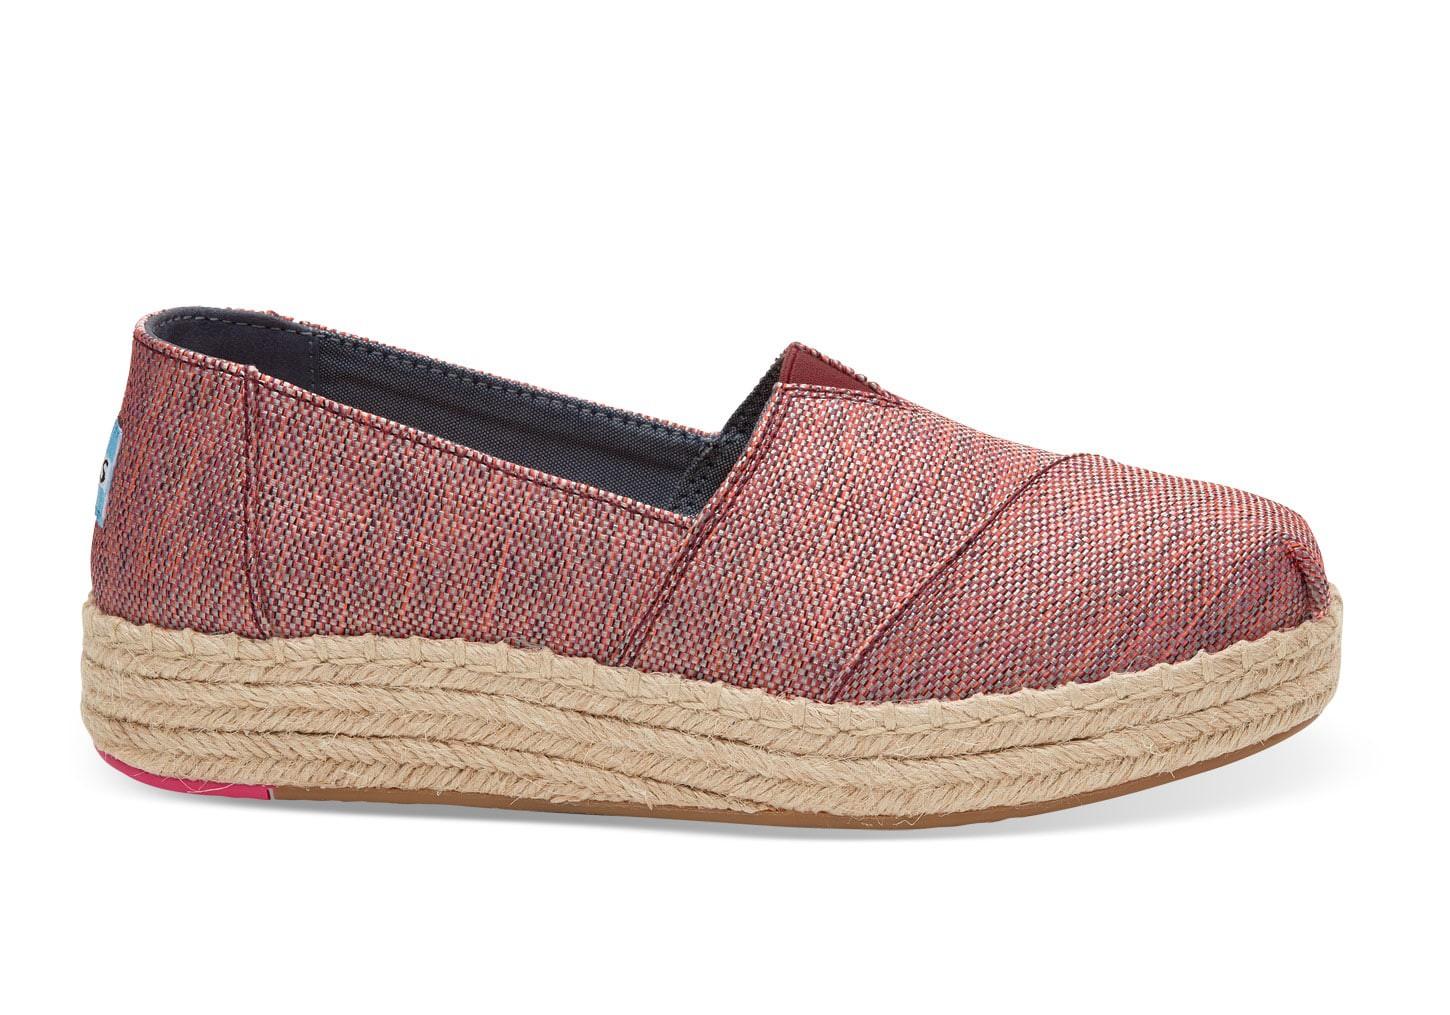 Toms Pomegranate Woven Melange Women's Platform Espadrilles Shoes | ModeSens